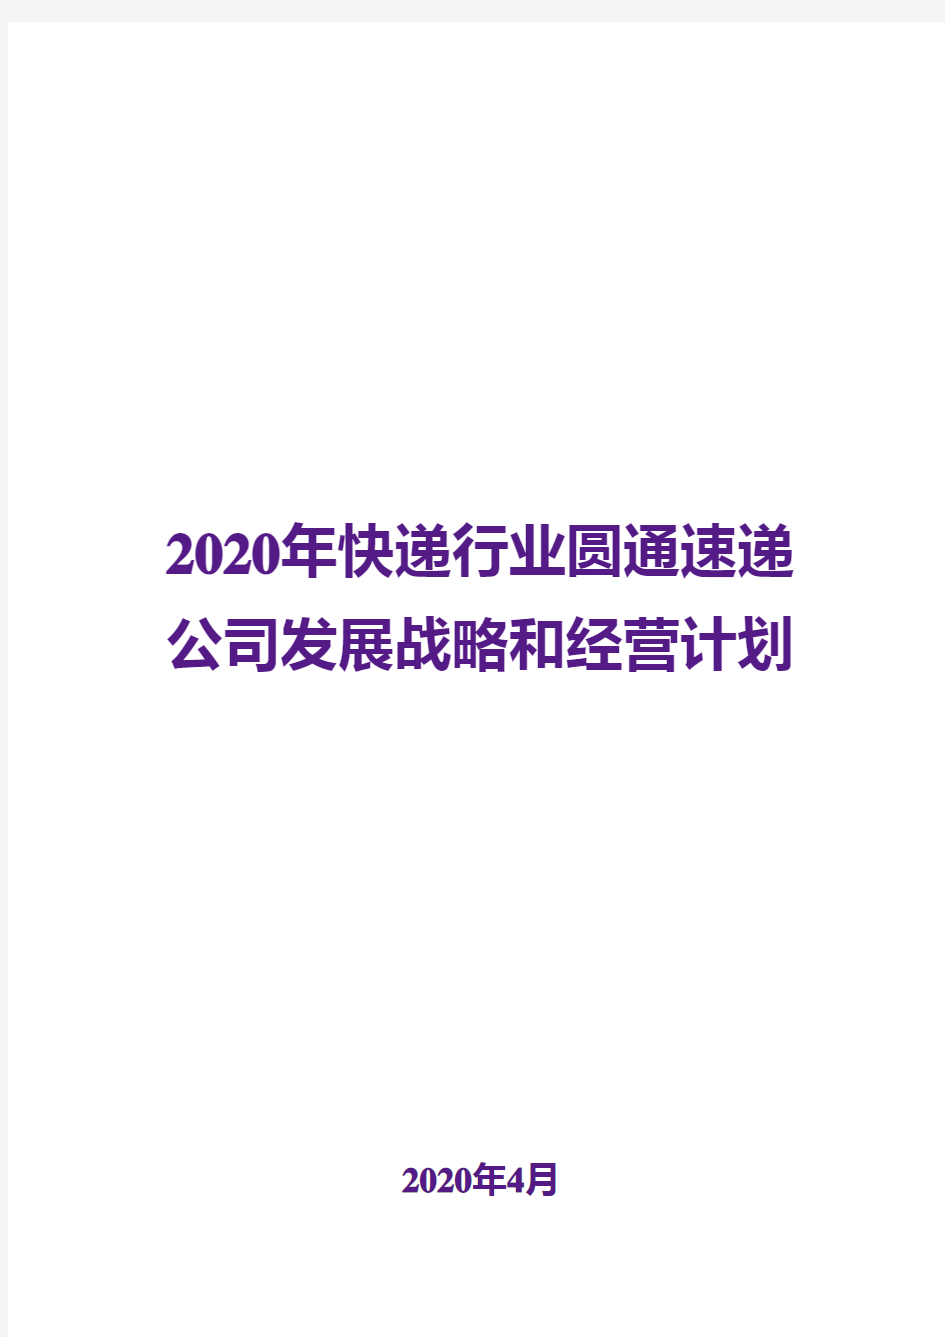 2020年快递行业圆通速递公司发展战略和经营计划